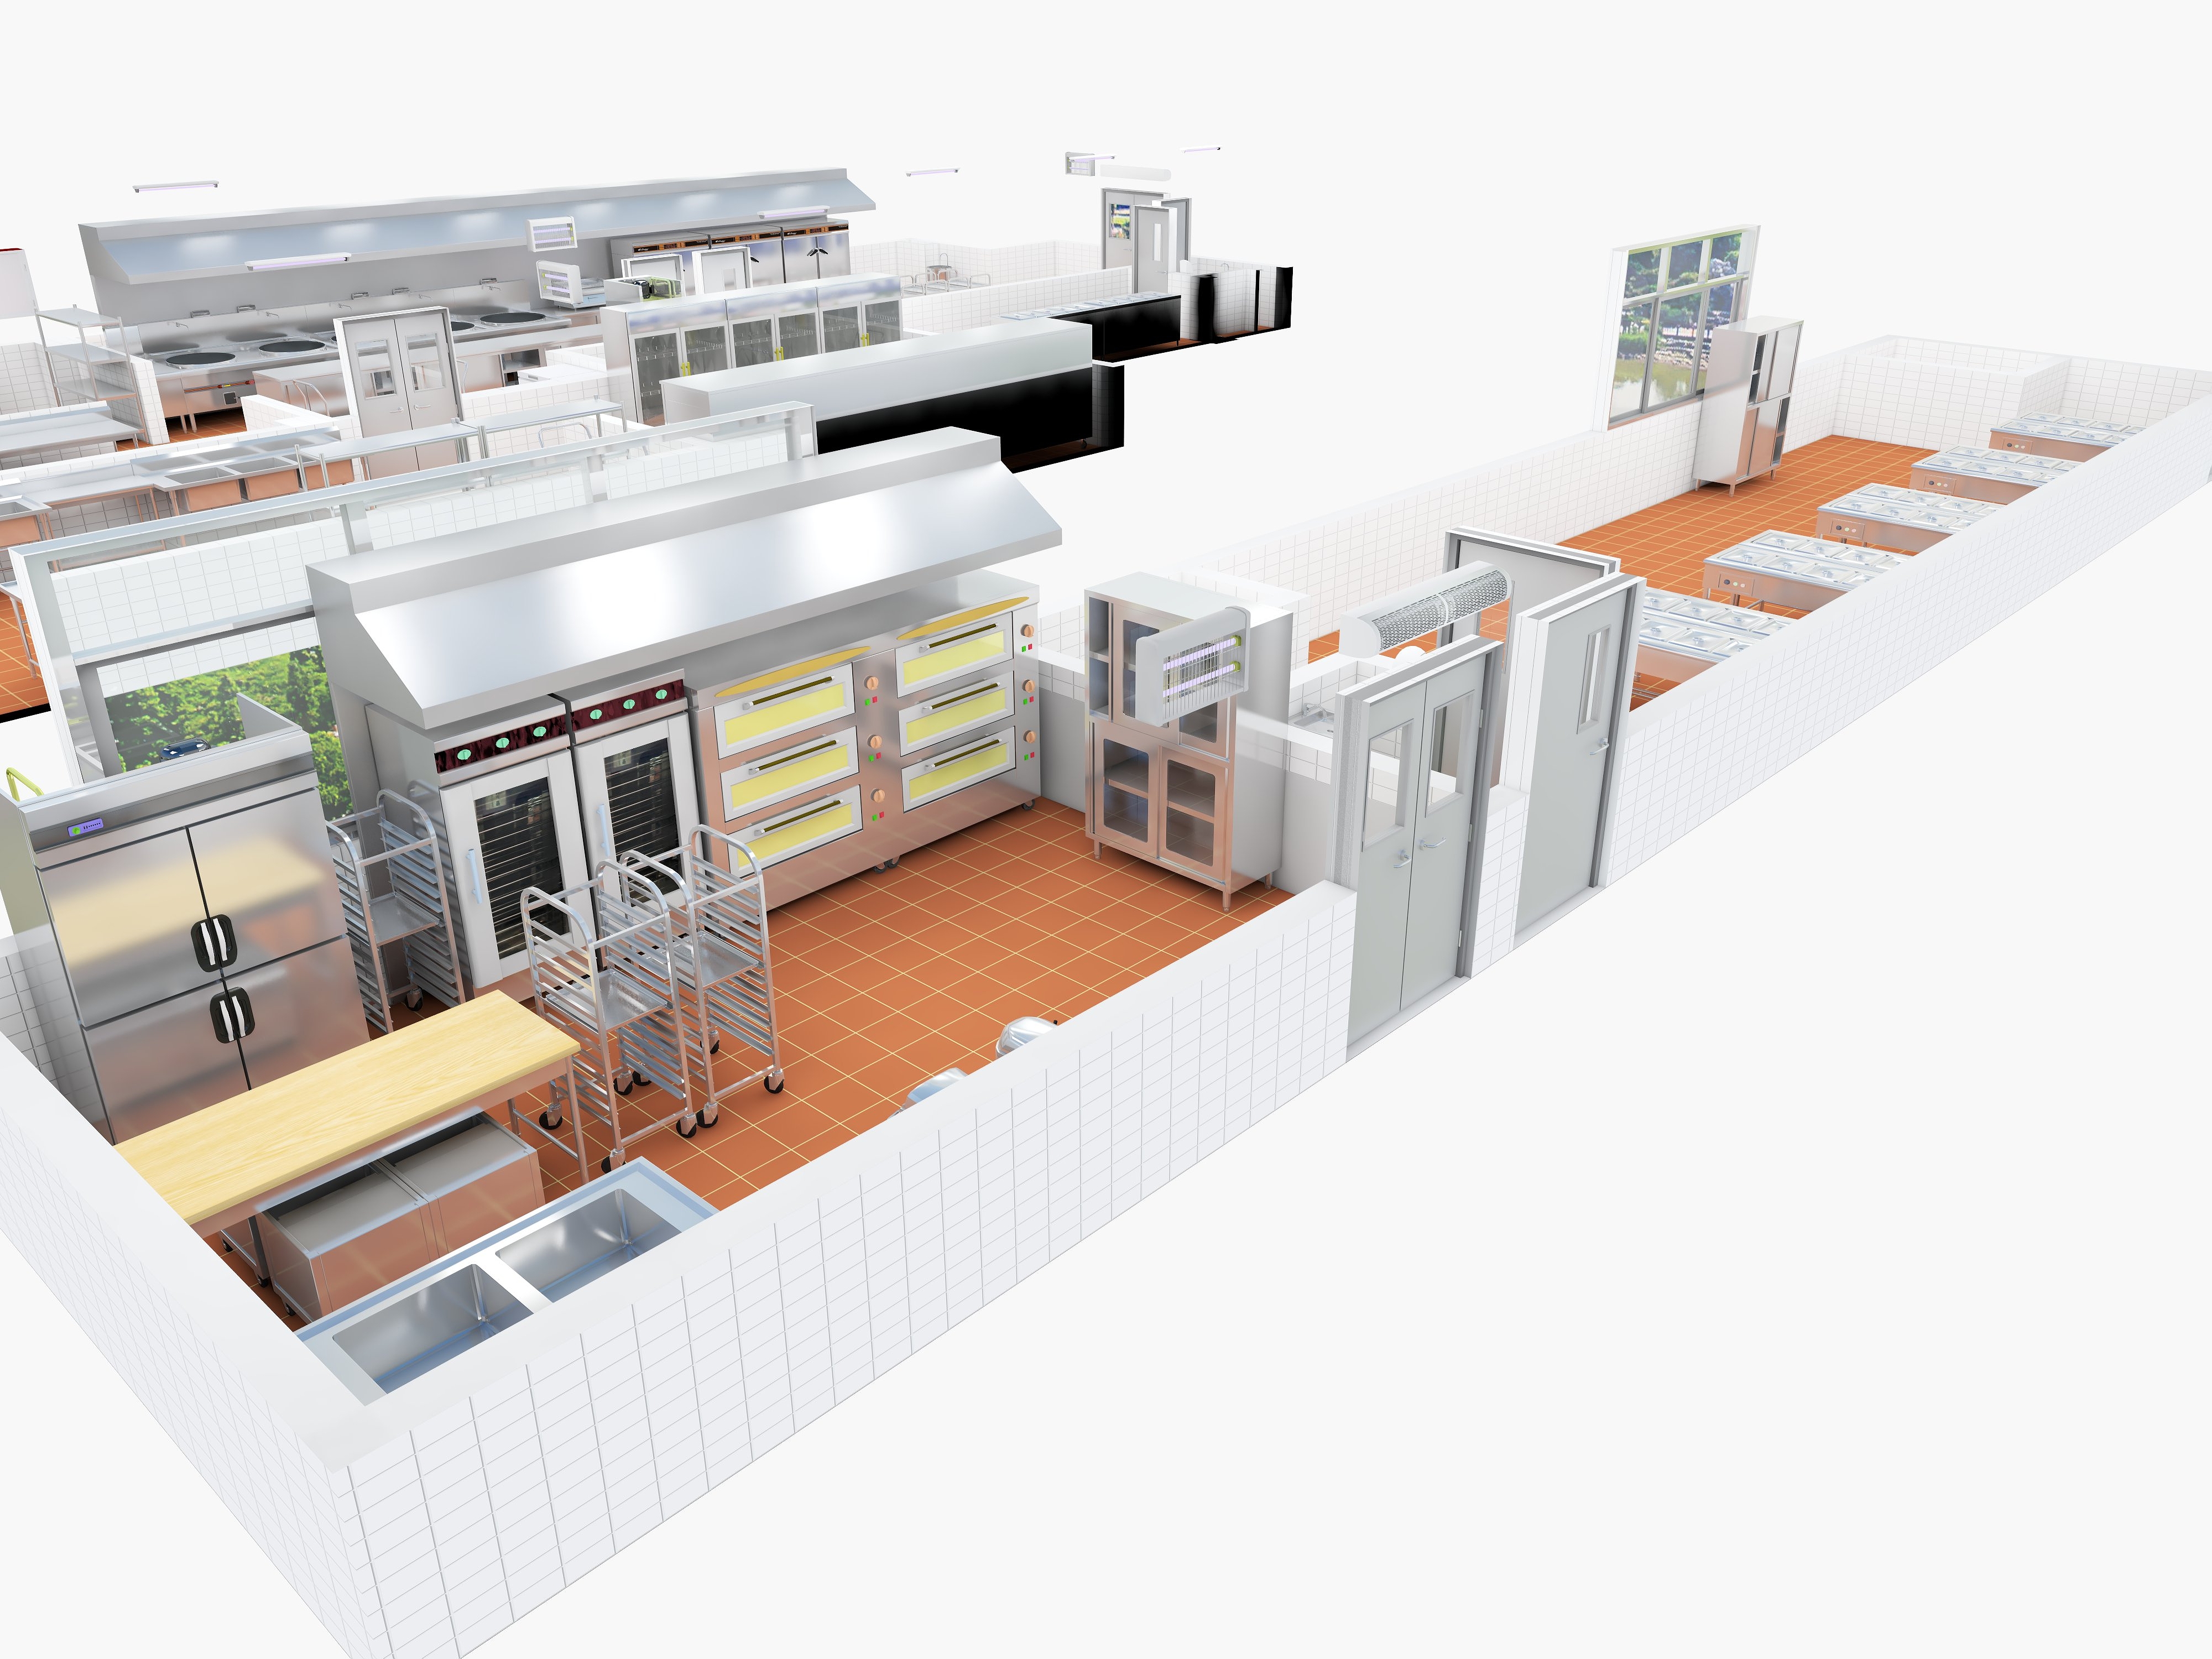 Desain dapur komersial: meningkatkan efisiensi dan mengurangi biaya, optimisasi penyimpanan